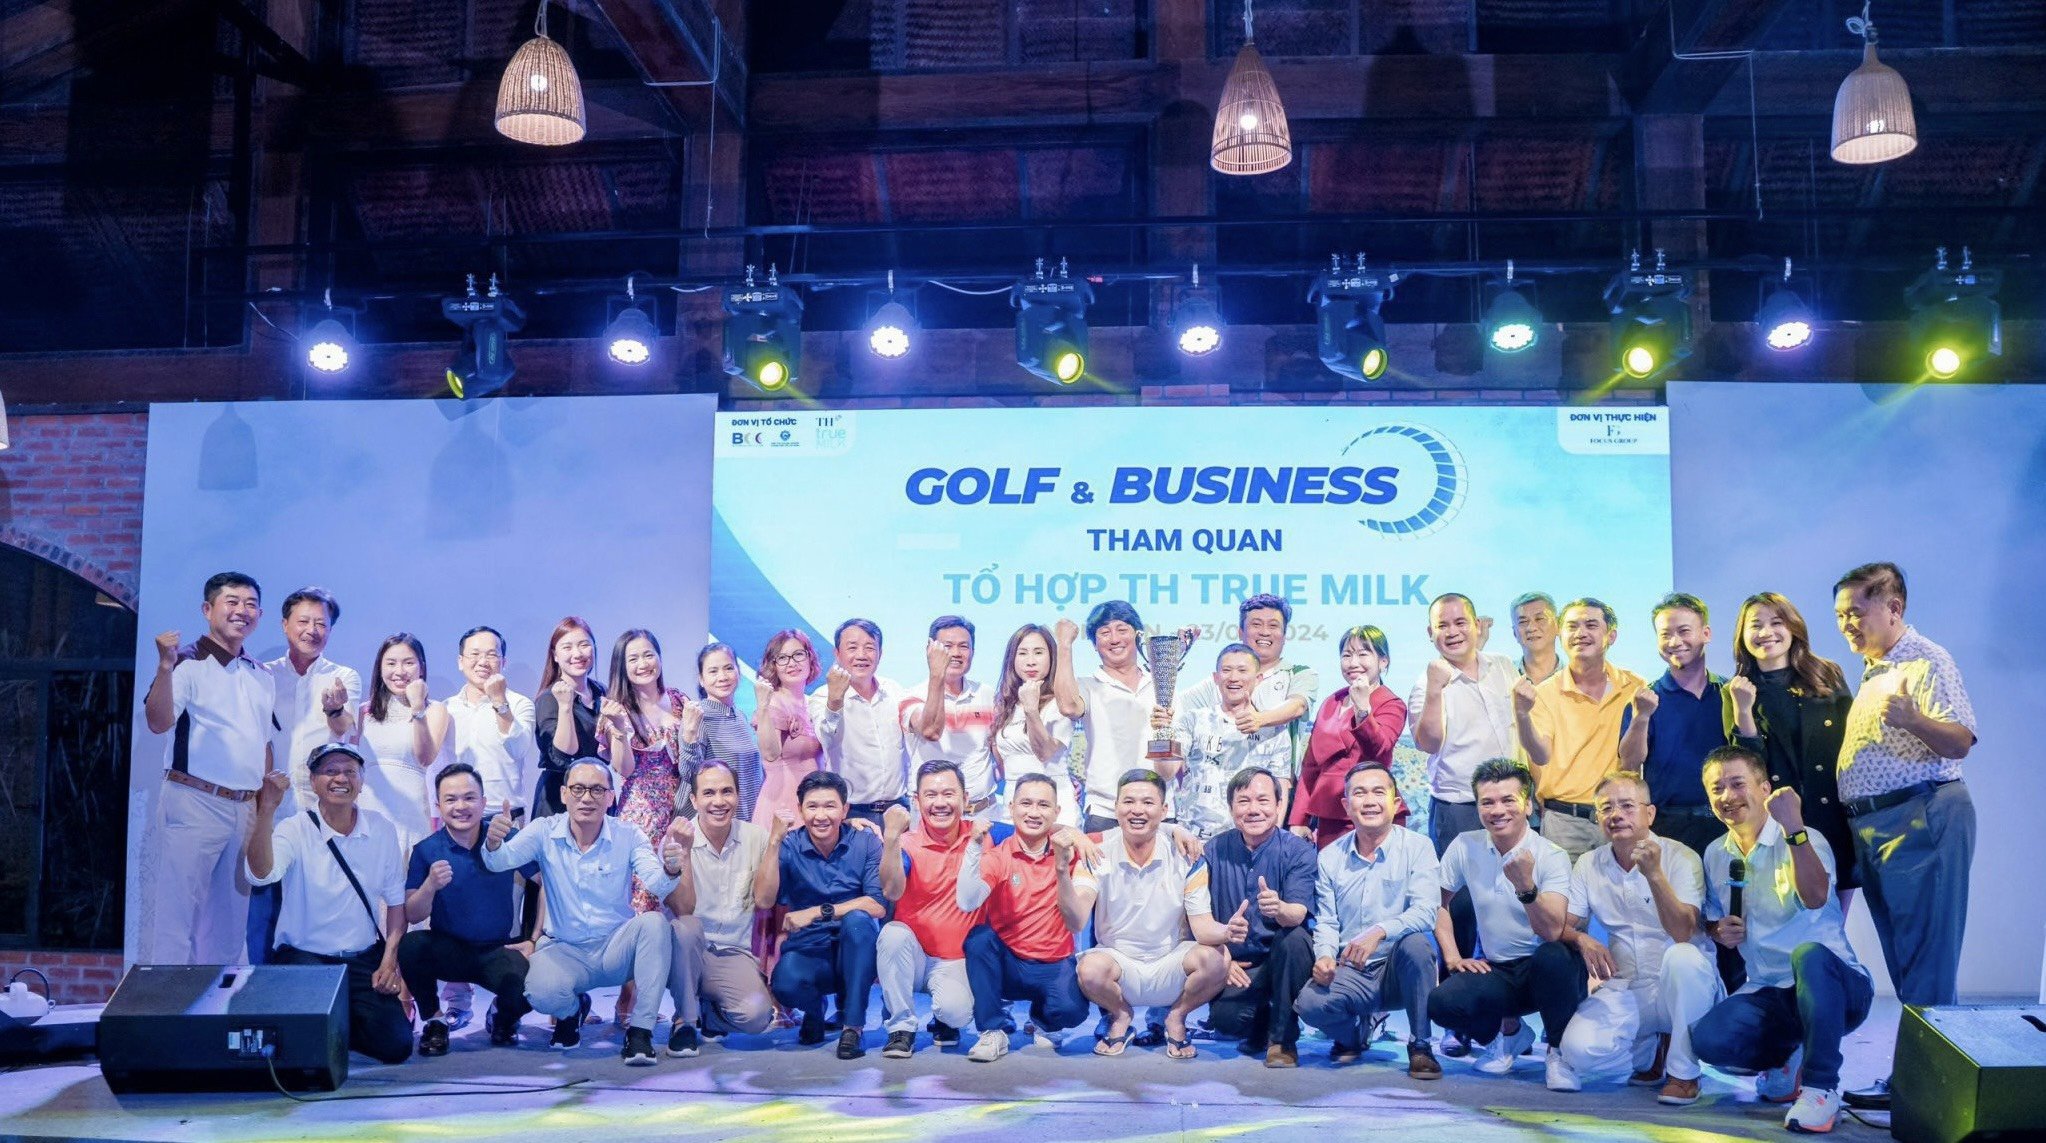 Giải Golf & Business tham quan nhà máy TH True Milk và Giao lưu golf  với CLB Golf Phủ Qùy tại Nghệ An